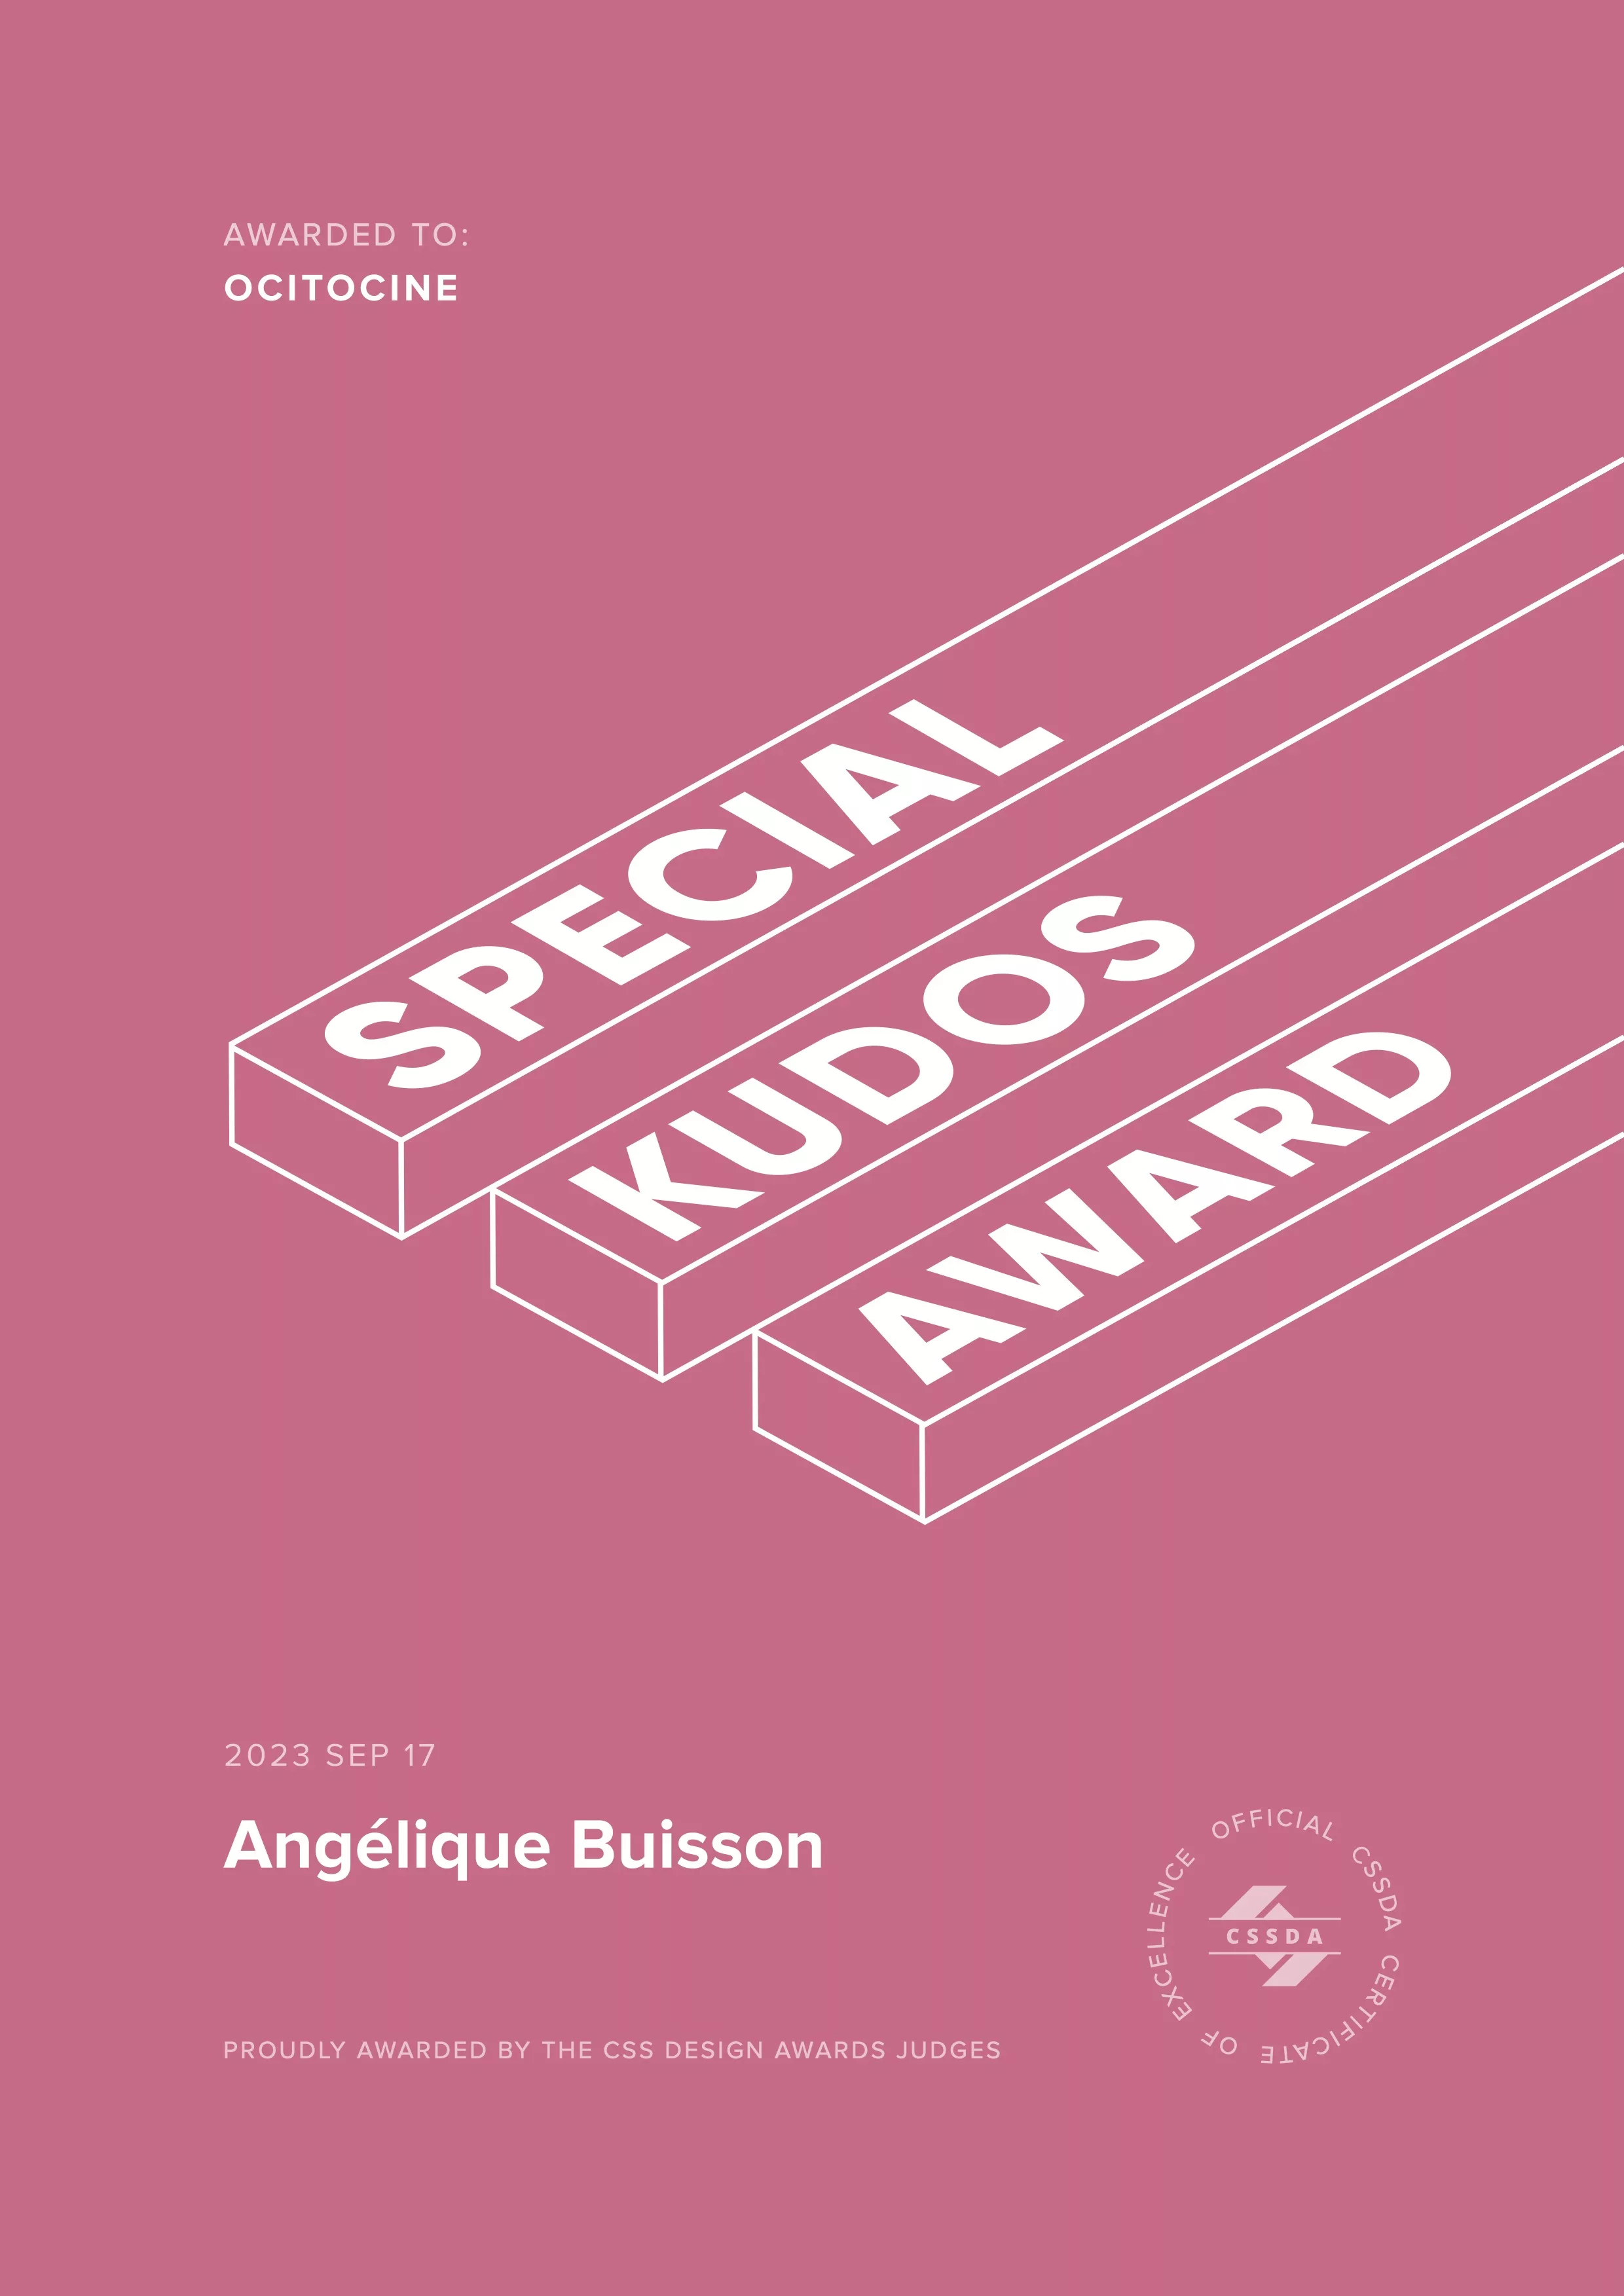 Ocitocine, agence créative web et branding, a remporté un prix "CSSDA Special Kudos Award" pour la réalisation du site web angelique-buisson.com